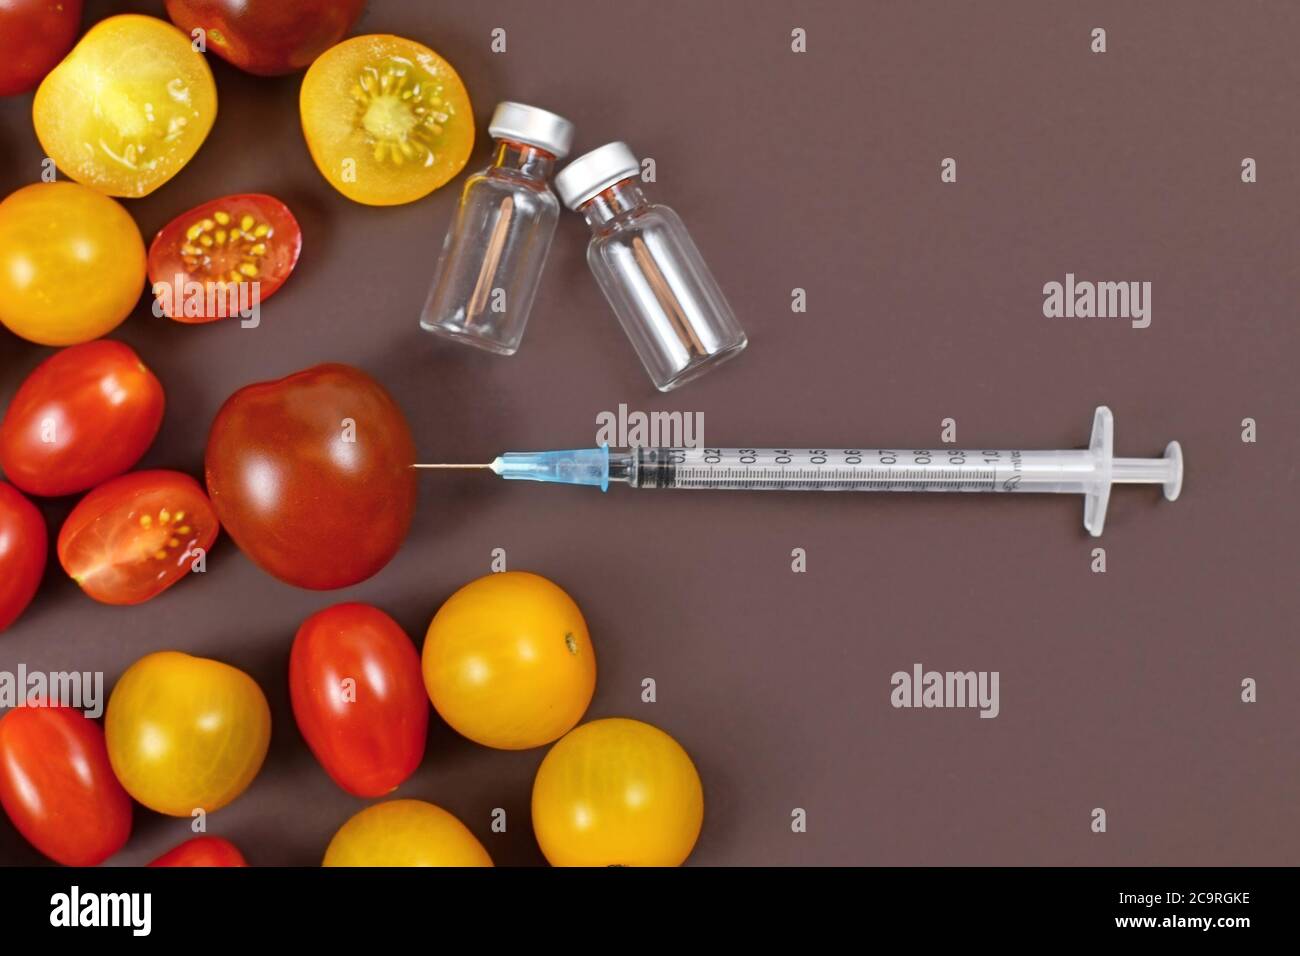 Konzept für gentechnisch veränderte Lebensmittel mit Tomaten, Injektionsspritze und leeren medizinischen Fläschchen auf dunkelbraunem Hintergrund Stockfoto